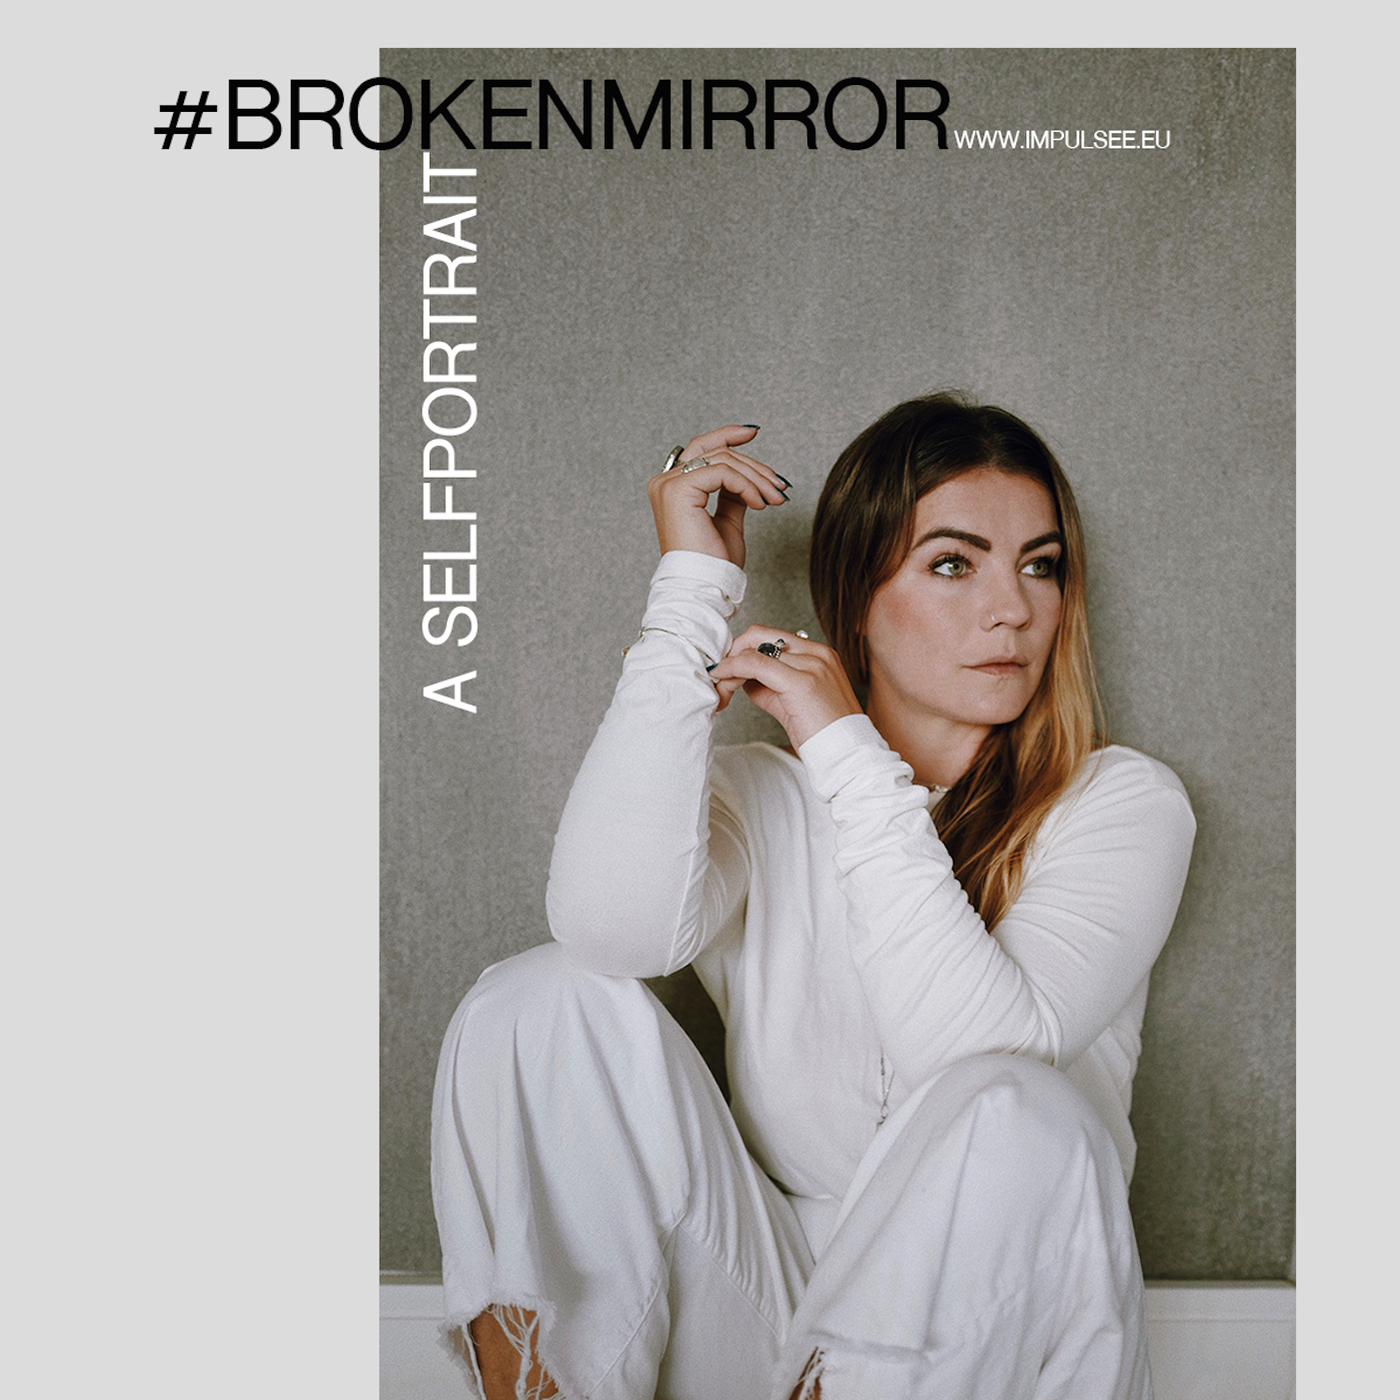 #brokenmirror : a selfportrait